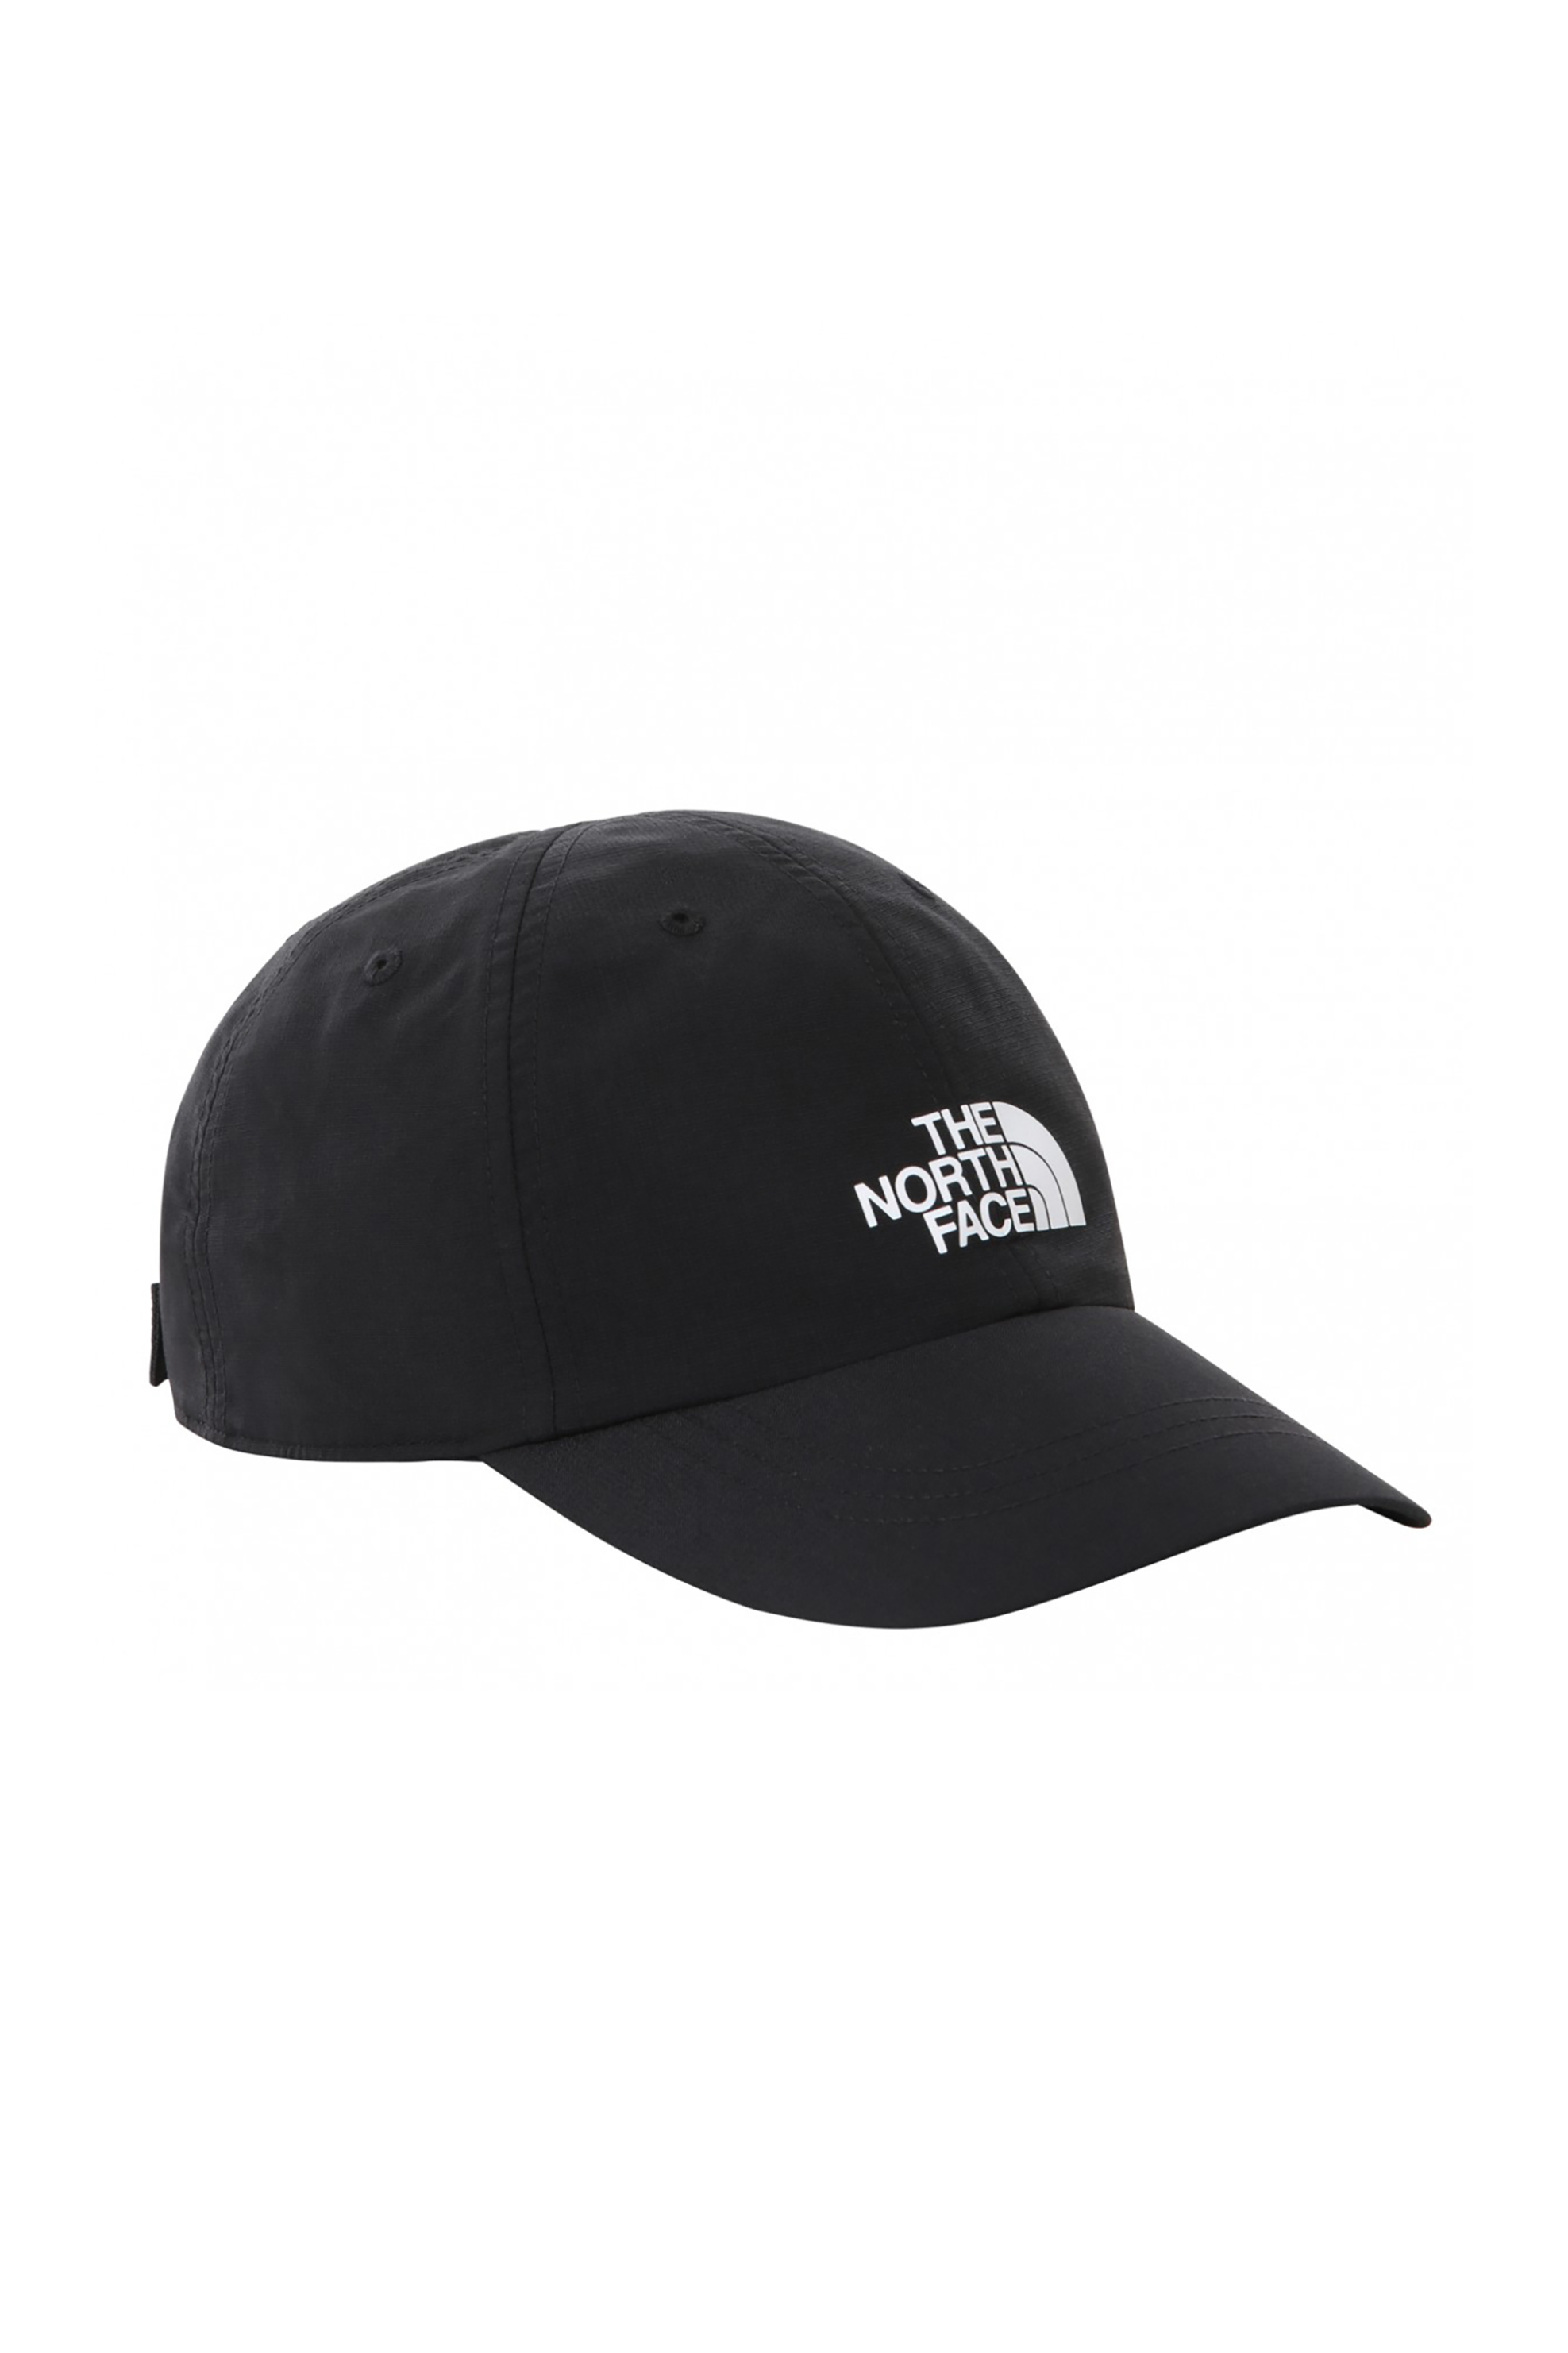 Ανδρική Μόδα > Ανδρικά Αξεσουάρ > Ανδρικά Καπέλα & Σκούφοι The North Face unisex καπέλο jockey μονόχρωμο "Horizon Hat" - NF0A5FXLJK31 Μαύρο